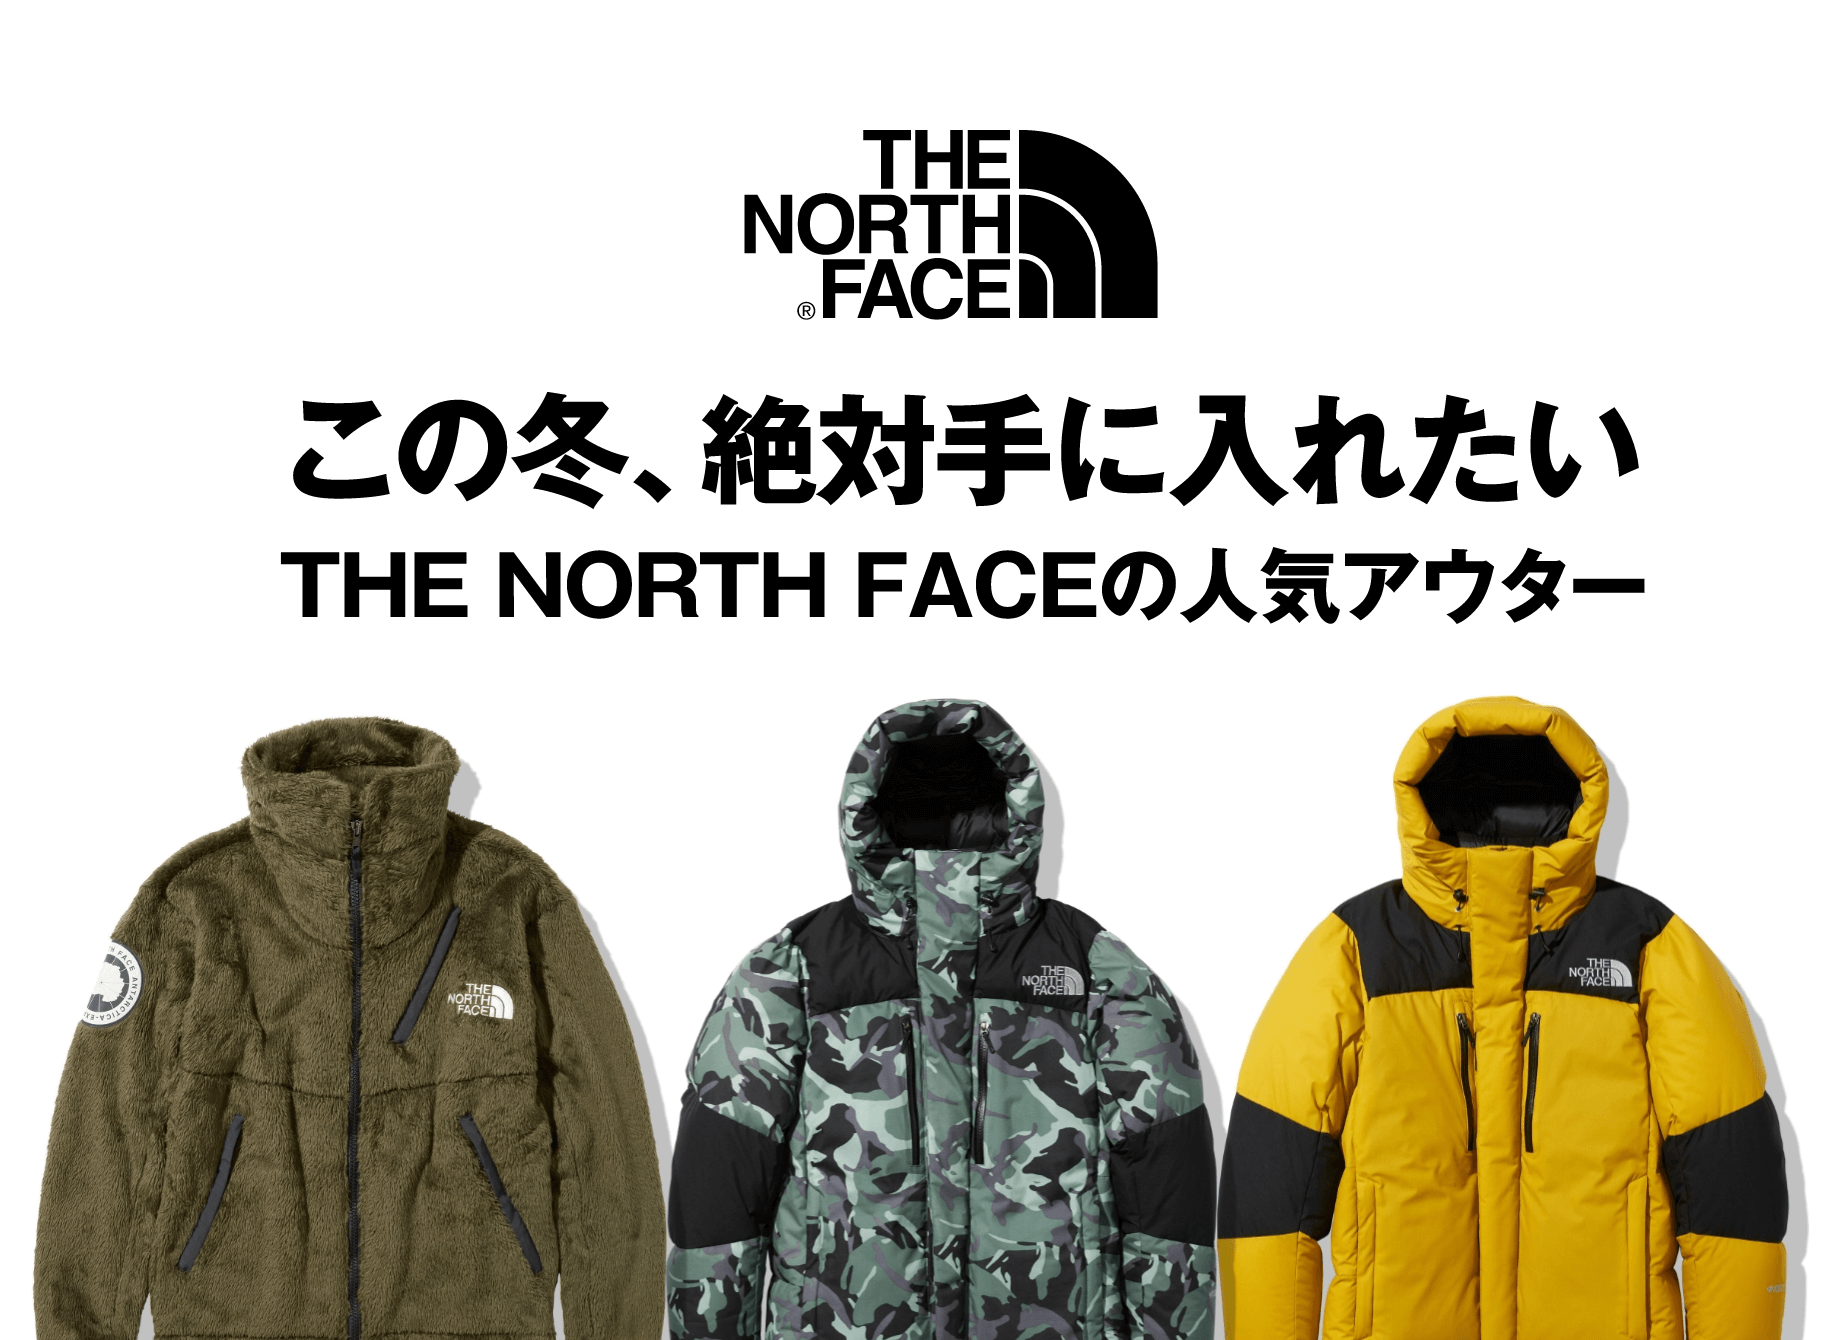 THE NORTH FACE バルトロライトジャケット ND91950 Lサイズ メンズ 買取 オンライン